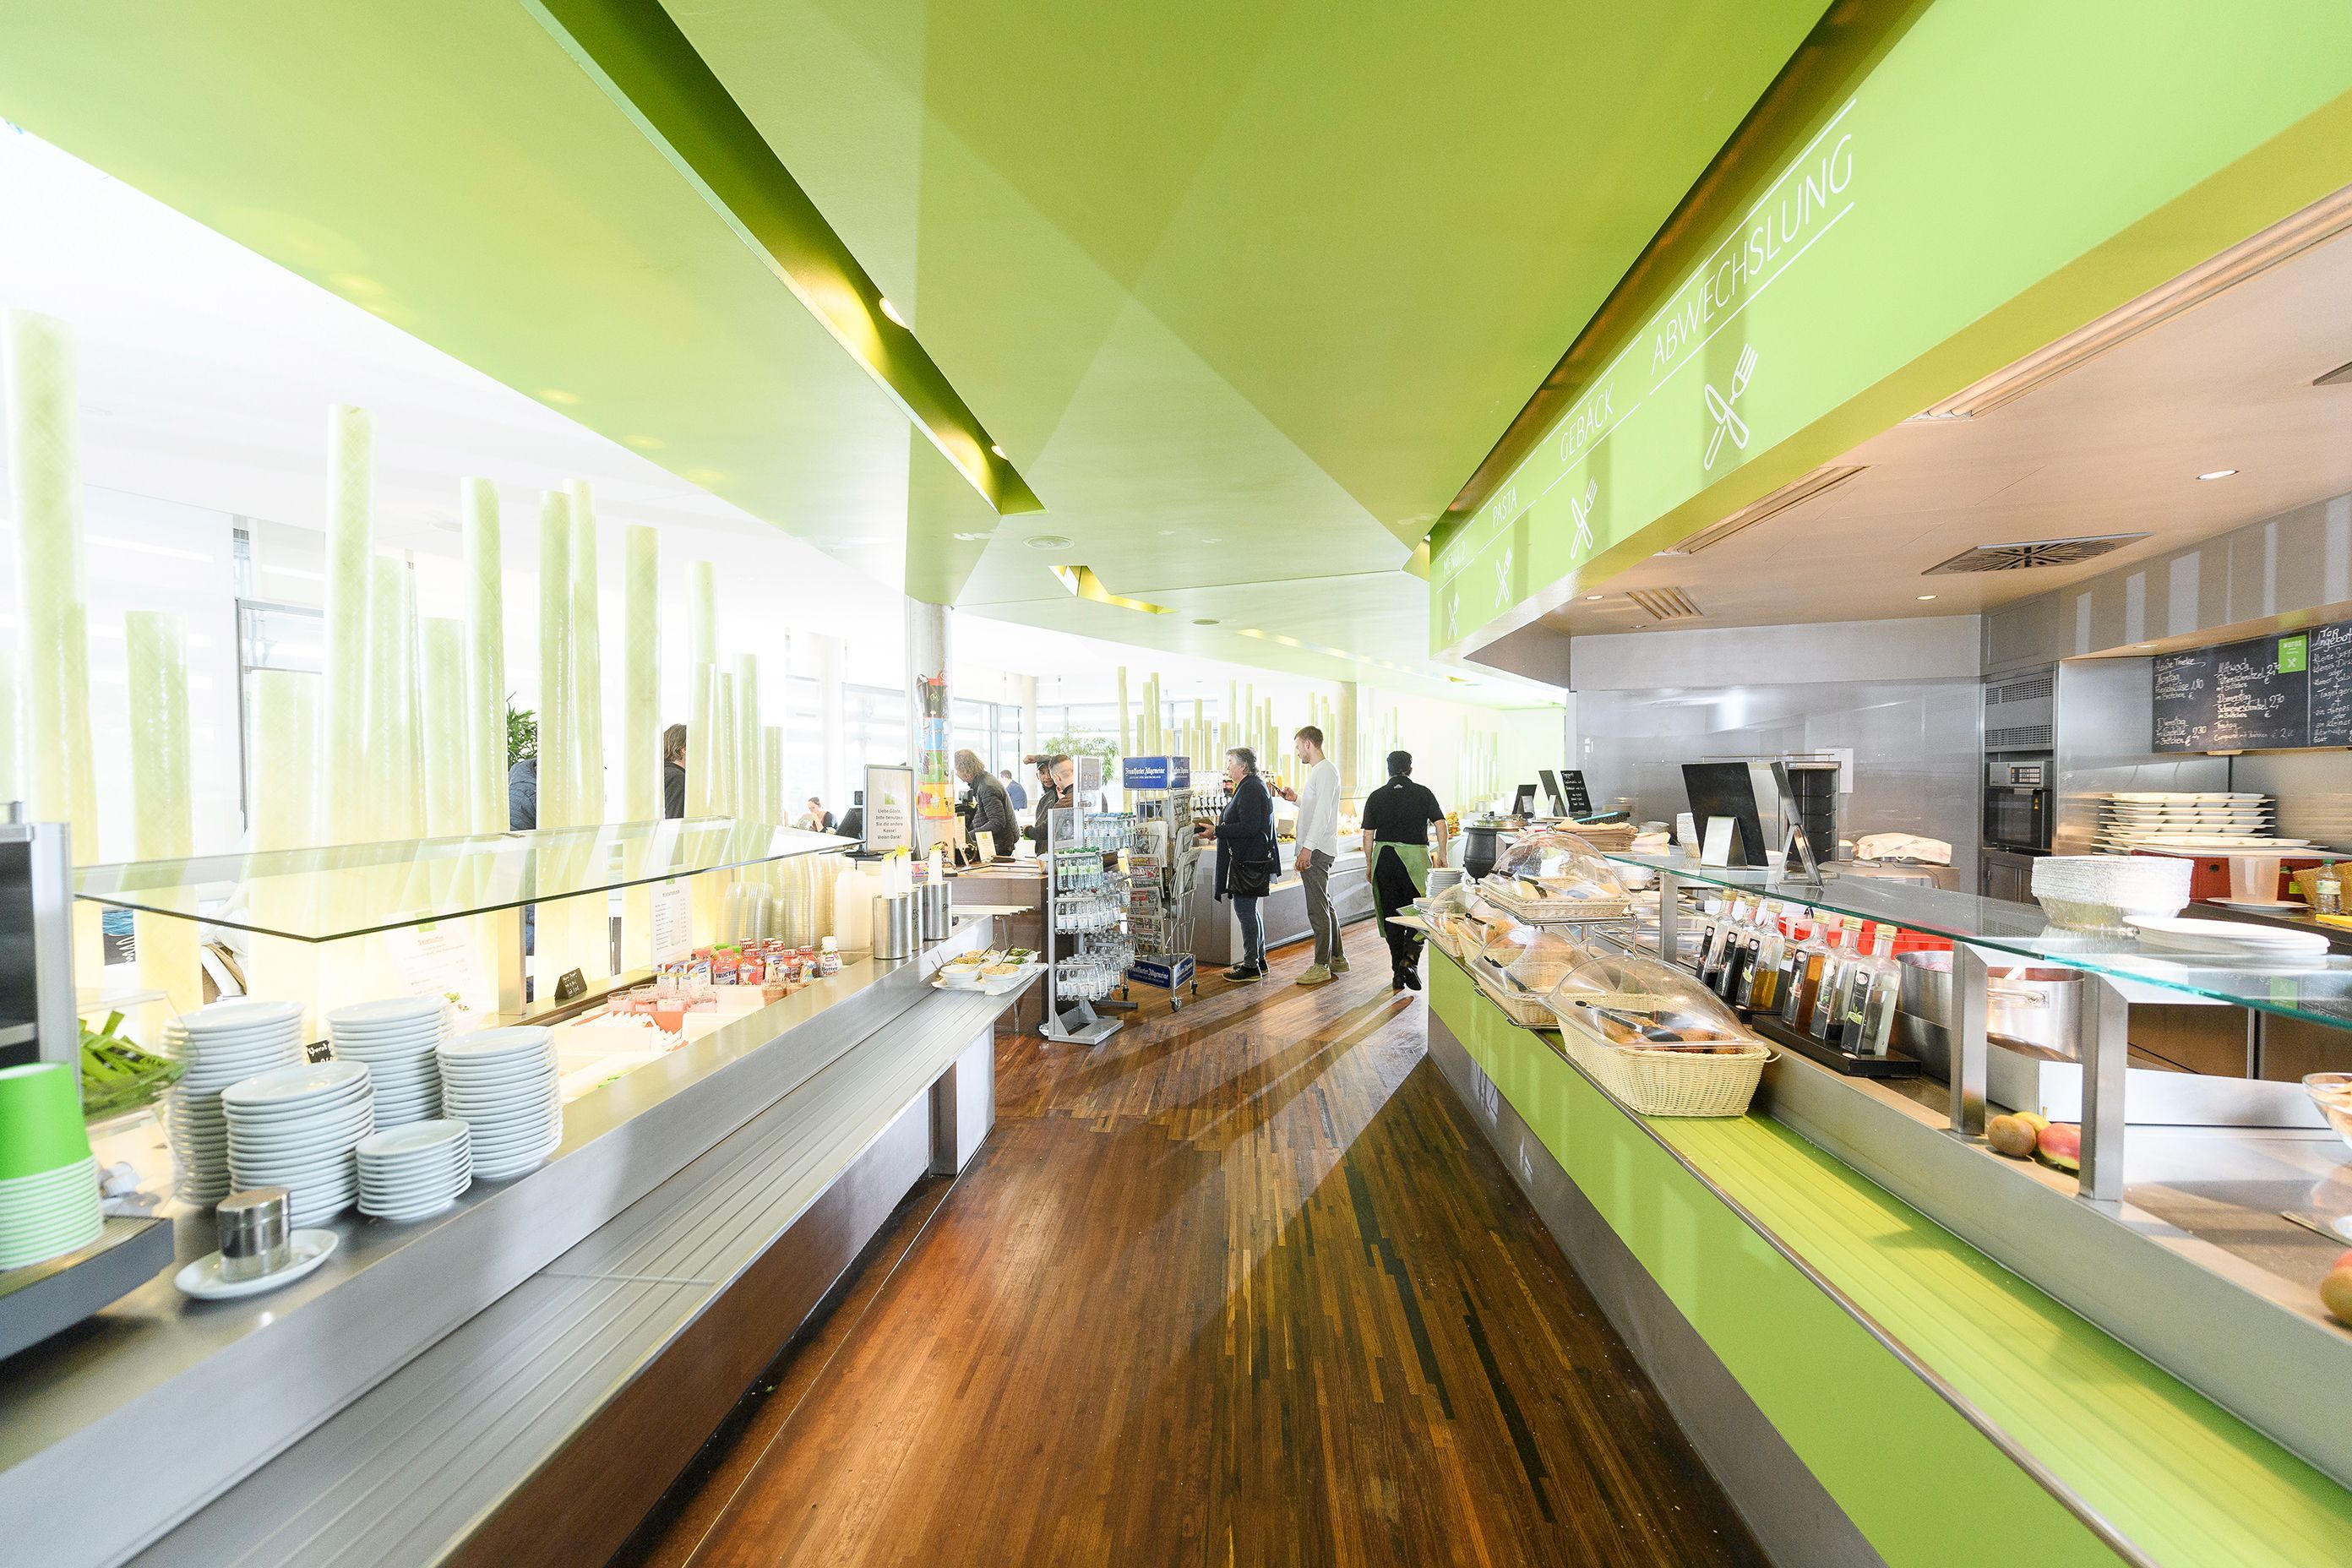 Blick in das UKW-Restaurant, Selbstbedienungstheken rechts und links, in frischer grüner Thekenverkleidung, grüner Decke und dunklem Holzstrukturboden.